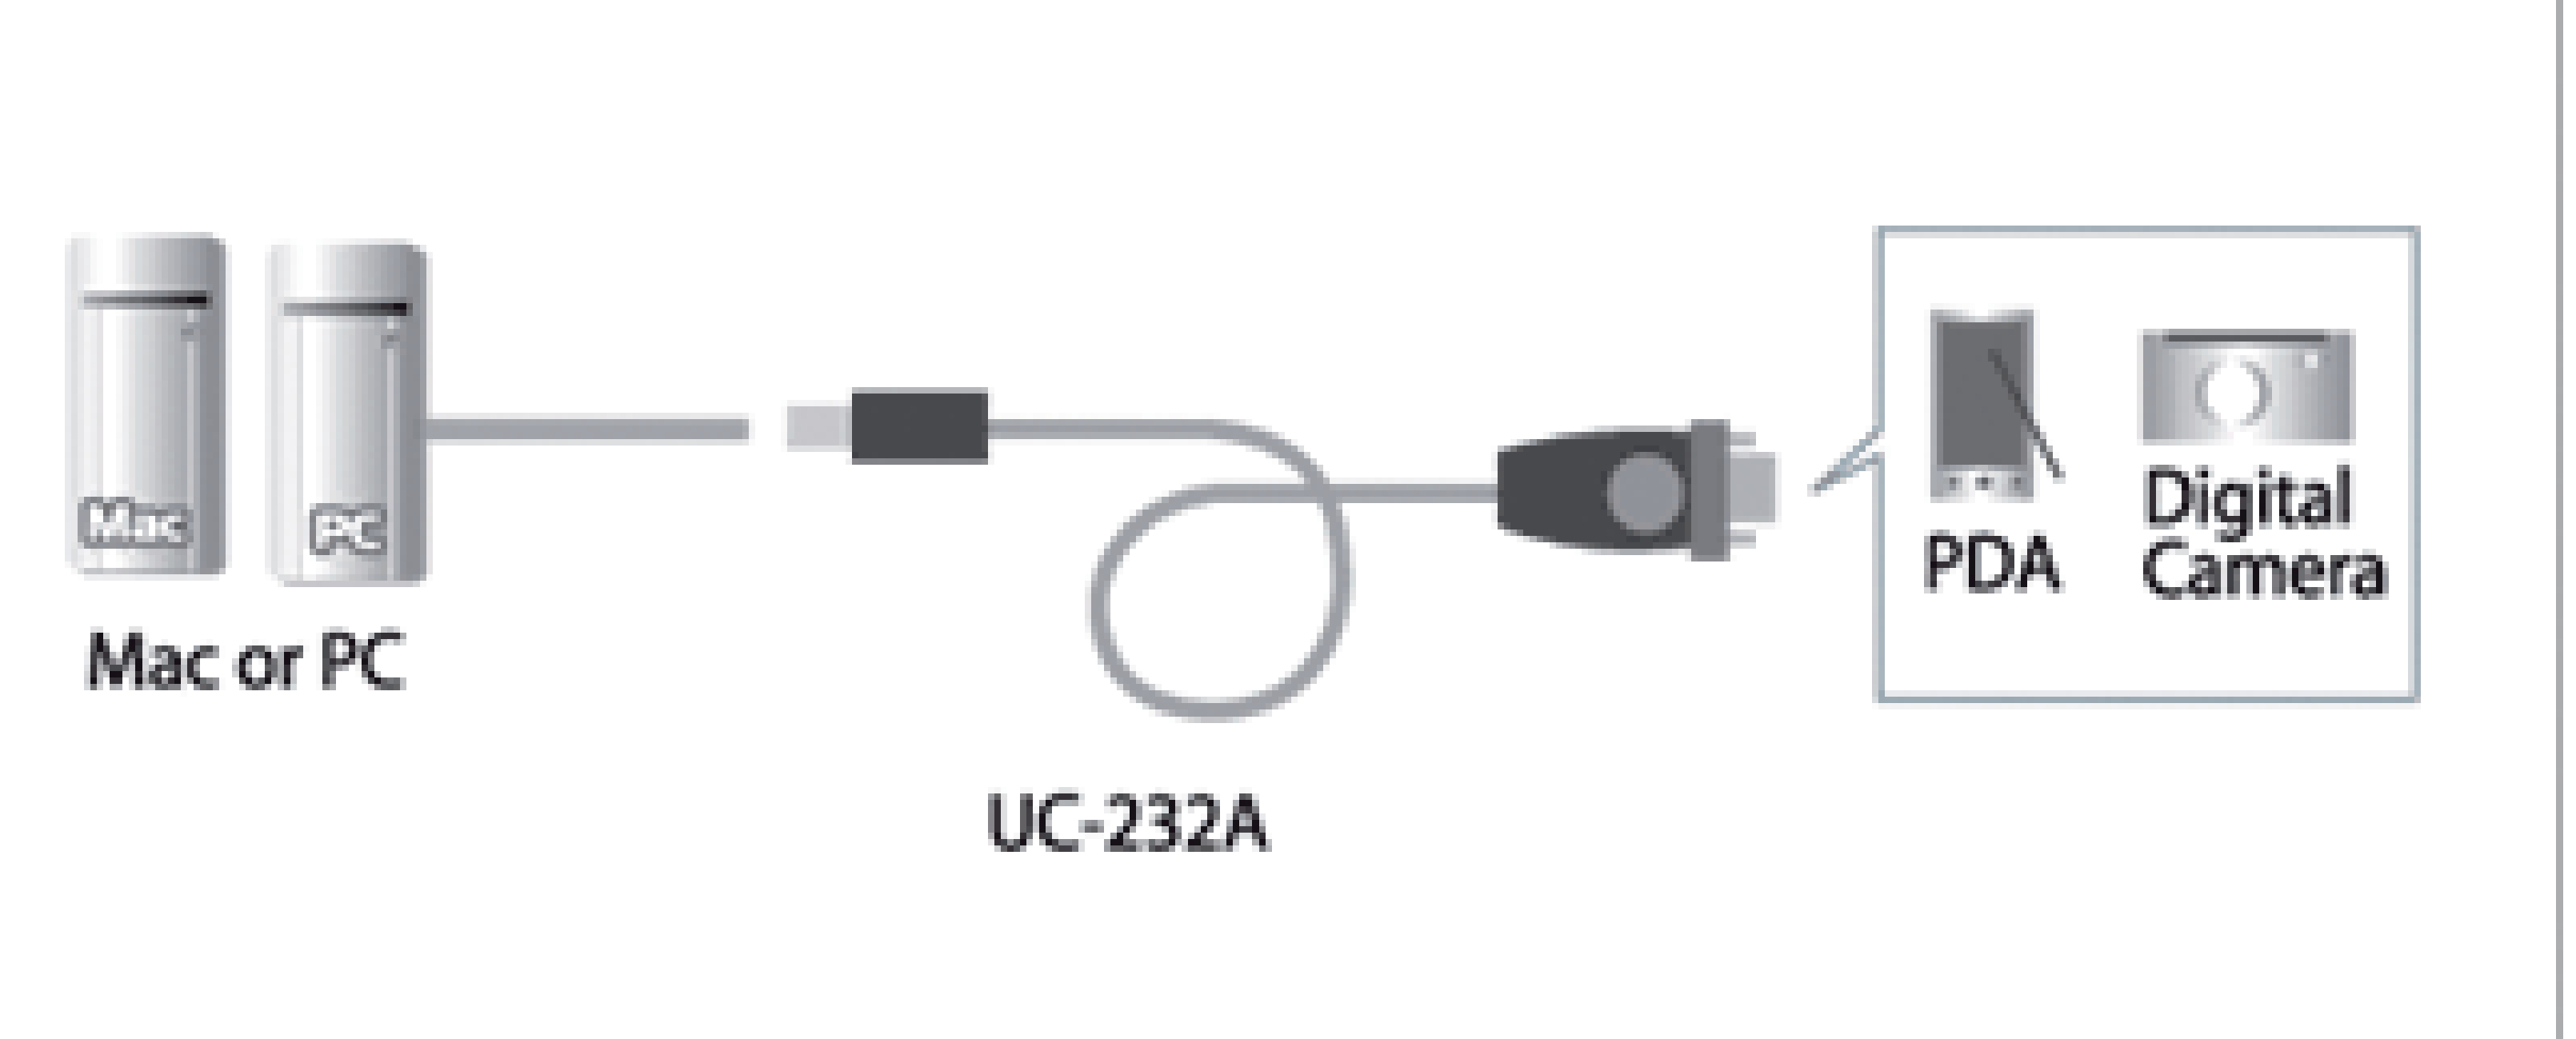  Reversible 2 entradas a 1 salida o 1 entrada a 2 salidas Kalea-Informatique   Distribuidor de periféricos de serie RS232/Switch RS-232/2 puertos  